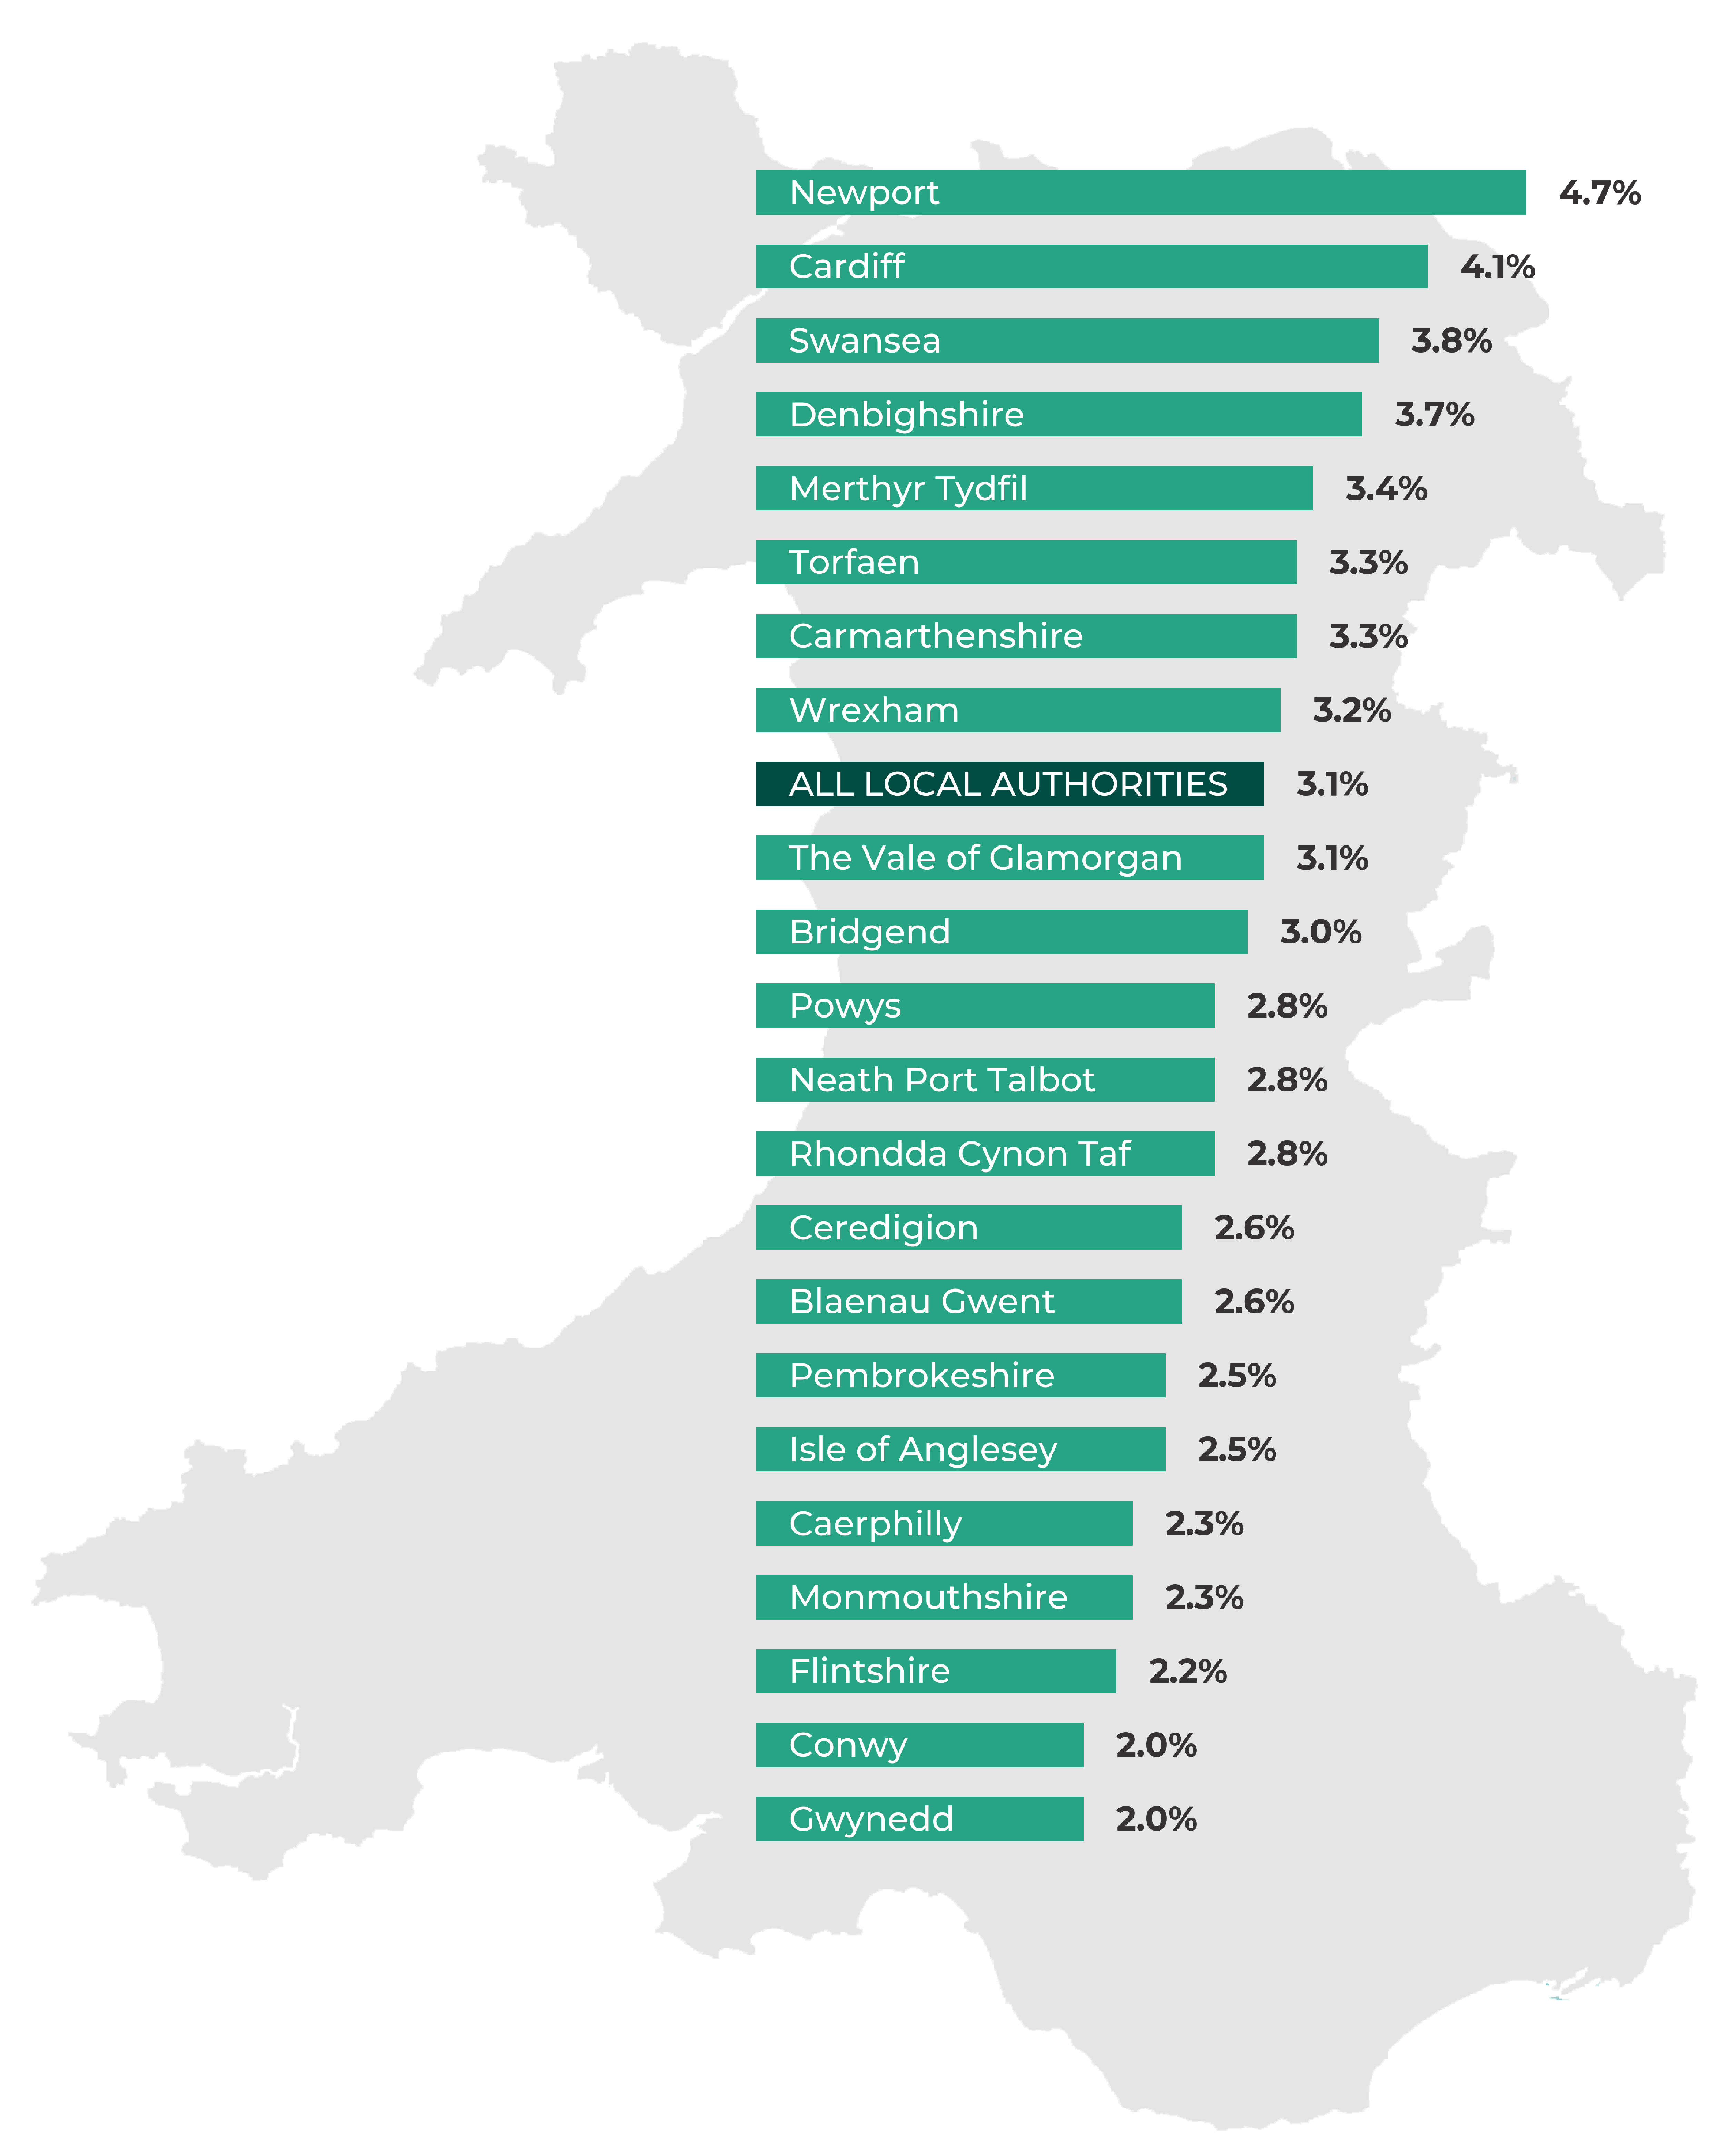 Gwynedd 2.0%, Conwy 2.0%, Flintshire 2.2%, Monmouthshire 2.3%, Caerphilly 2.3%, Isle of Anglesey  2.5%, Pembrokeshire 2.5%, Blaenau Gwent 2.6%, Ceredigion 2.6%, Rhondda Cynon Taf 2.8%, Neath Port Talbot  2.8%, Powys 2.8%, Bridgend  3.0%, The Vale of Glamorgan 3.1%, ALL LOCAL AUTHORITIES 3.1%, Wrexham  3.2%, Carmarthenshire 3.3%, Torfaen 3.3%, Merthyr Tydfil 3.4%, Denbighshire 3.7%, Swansea  3.8%, Cardiff 4.1%, Newport 4.7%.